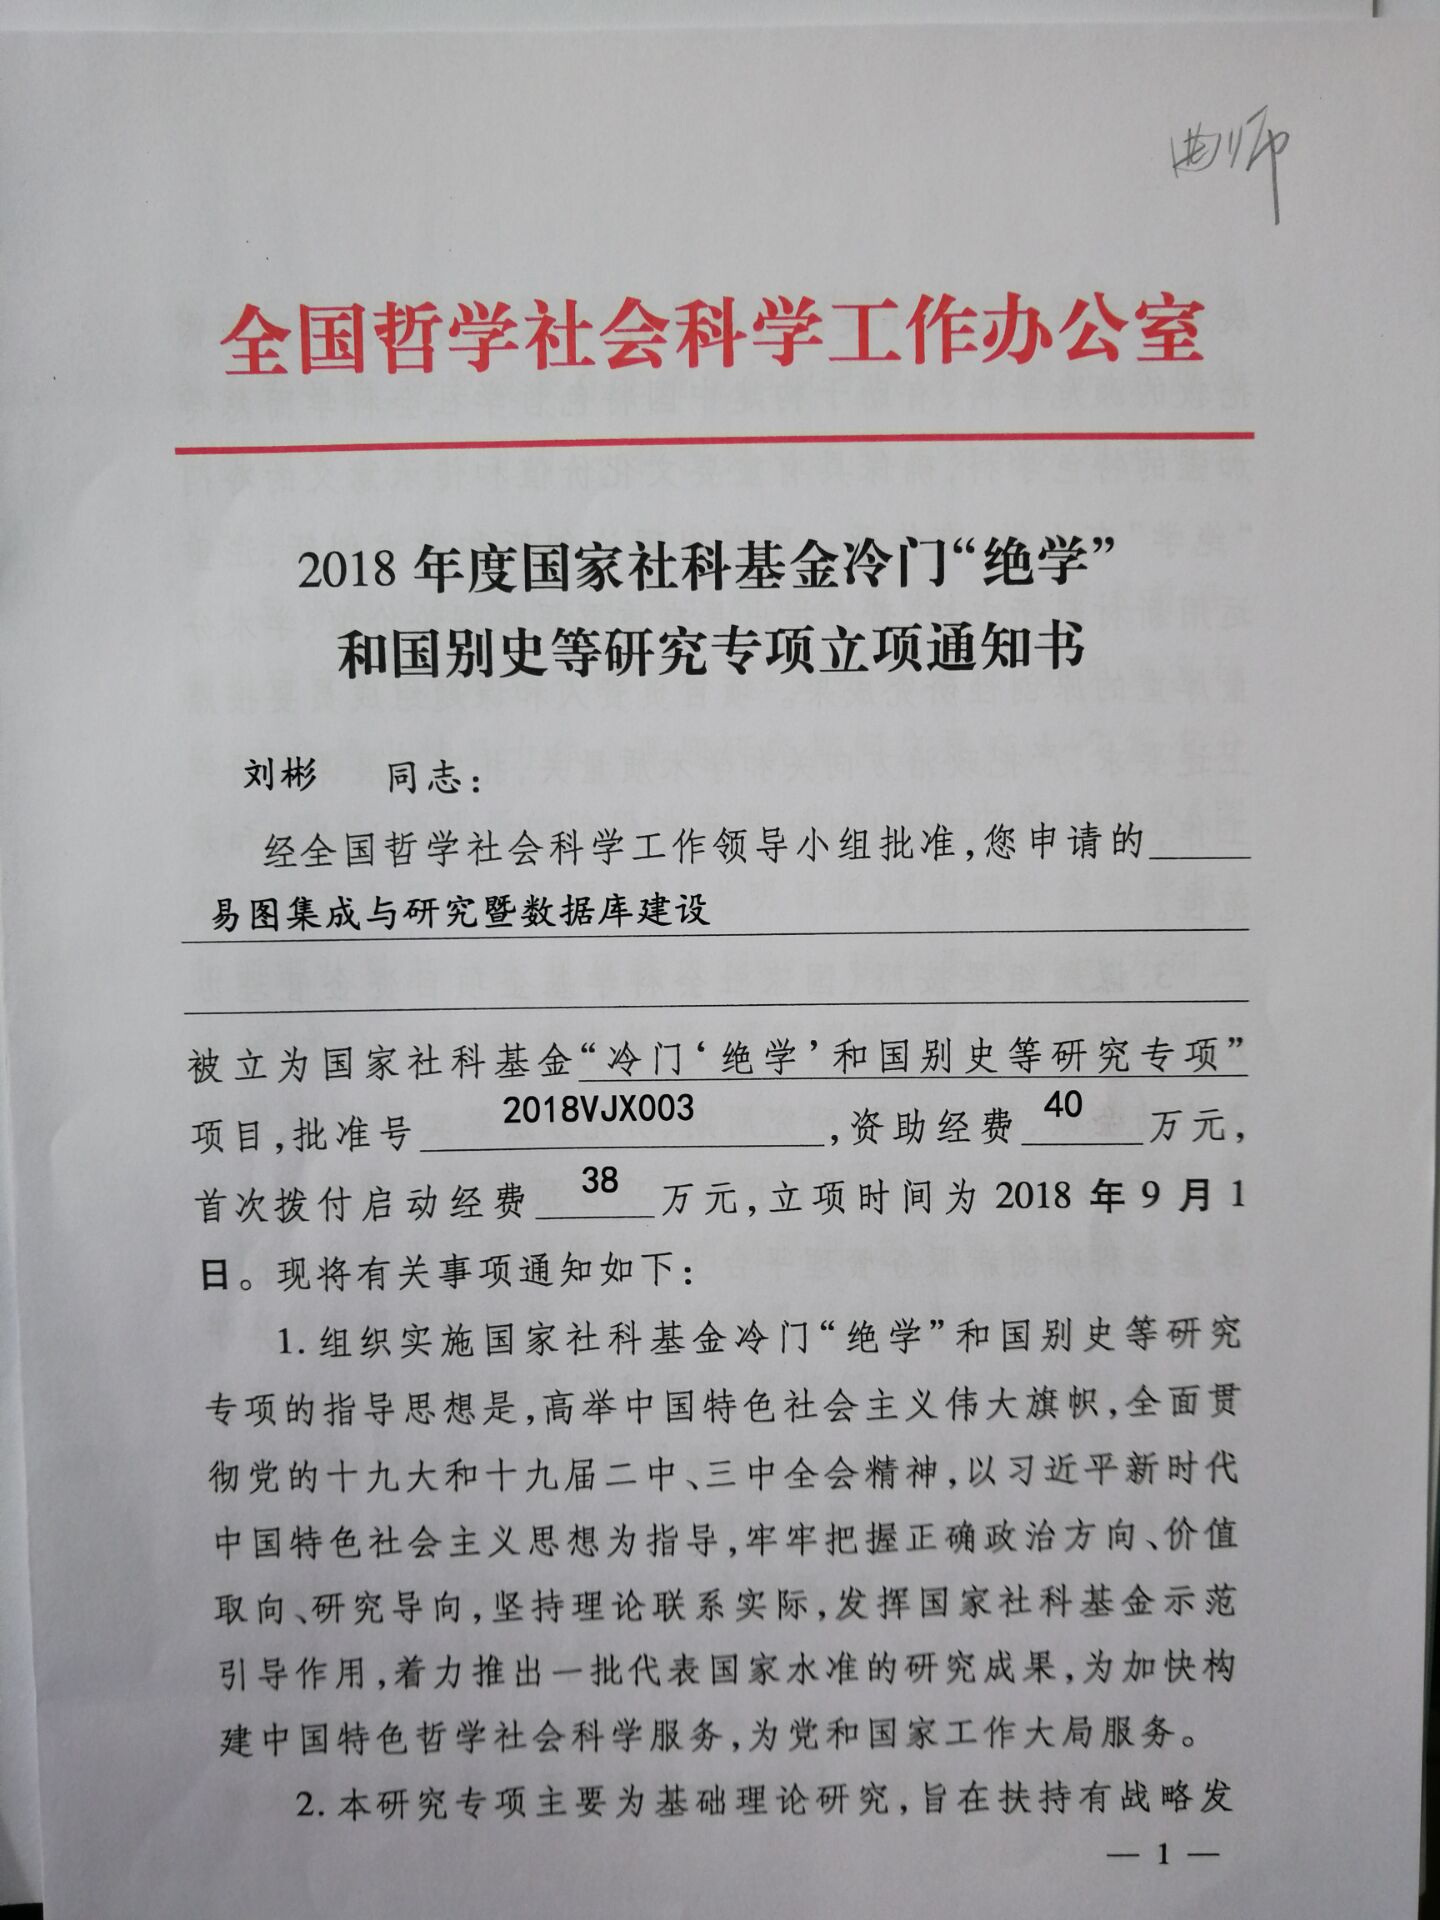 授、李炳海教授获得2018年度国家社科基金冷